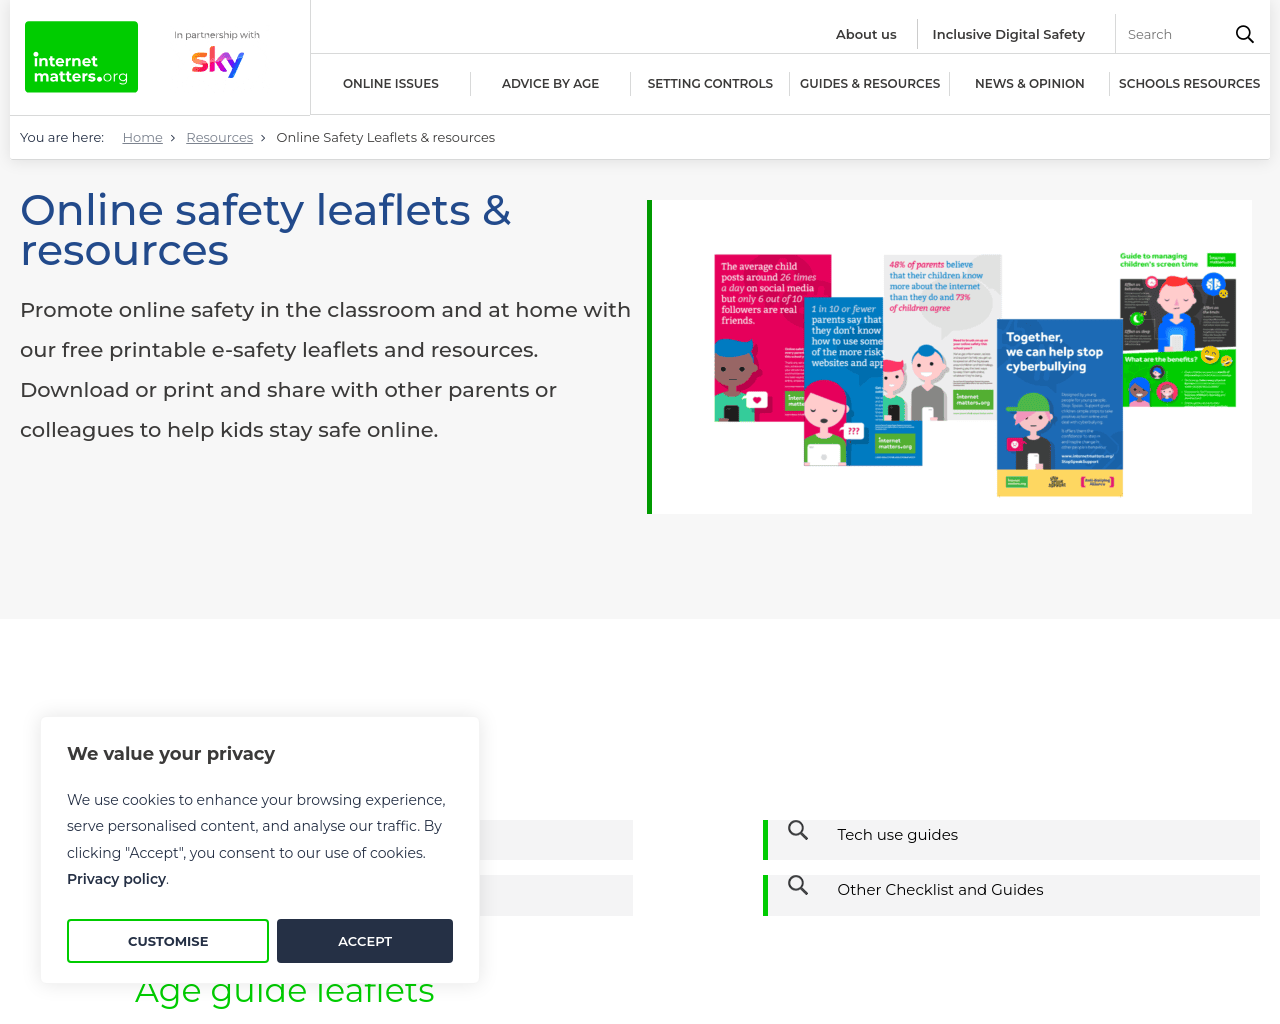 Online Safety Leaflets & resources - Internet Matters